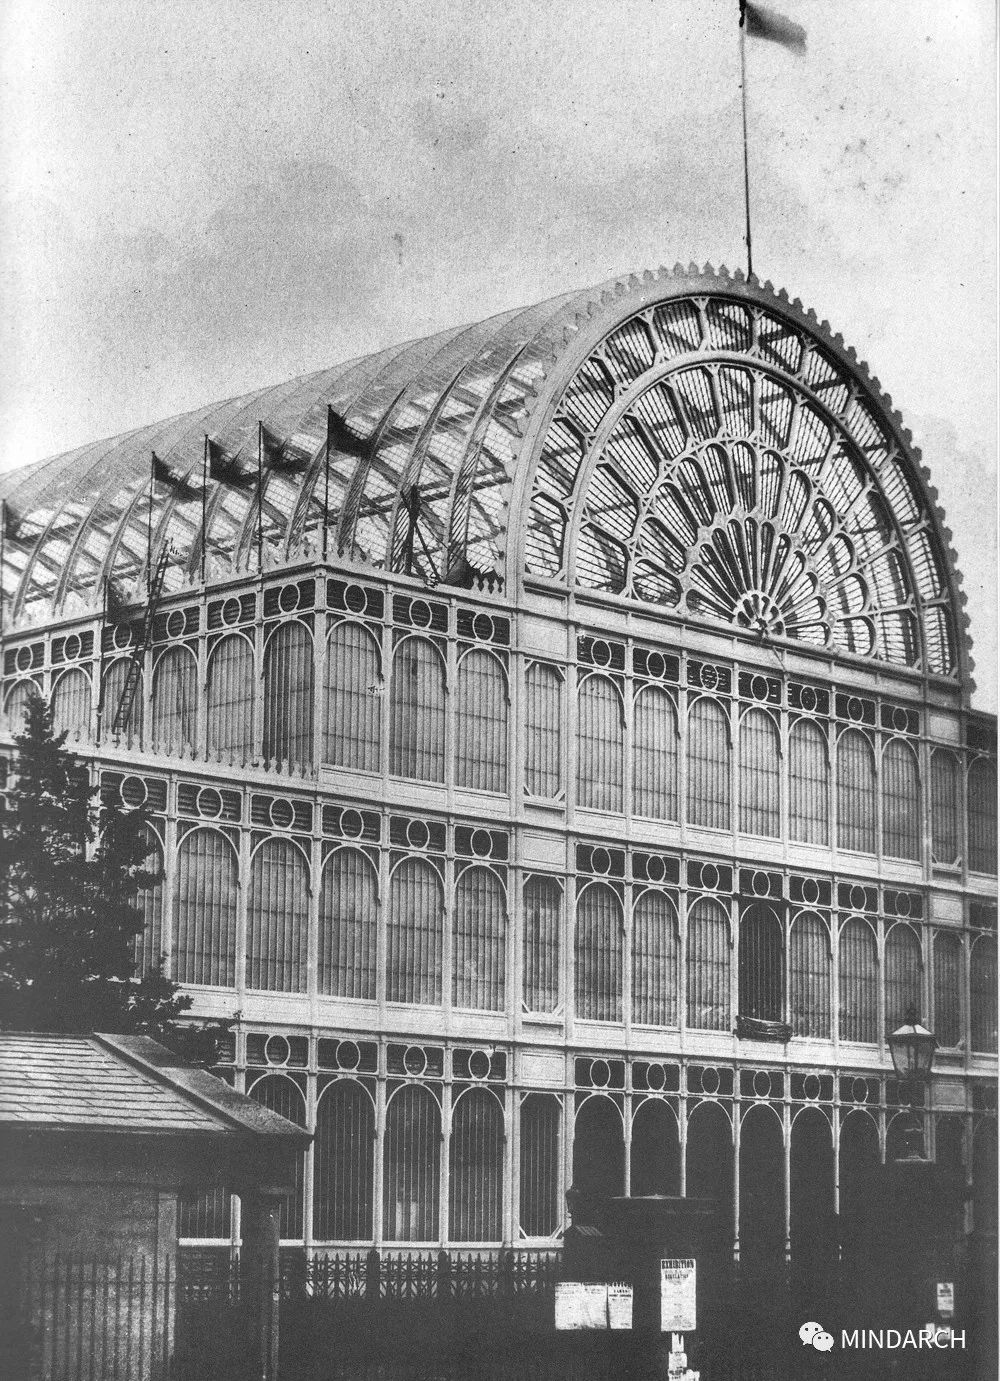 或许可以追溯到现代主义之初,1851年第一届博览会的巨大展馆「水晶宫